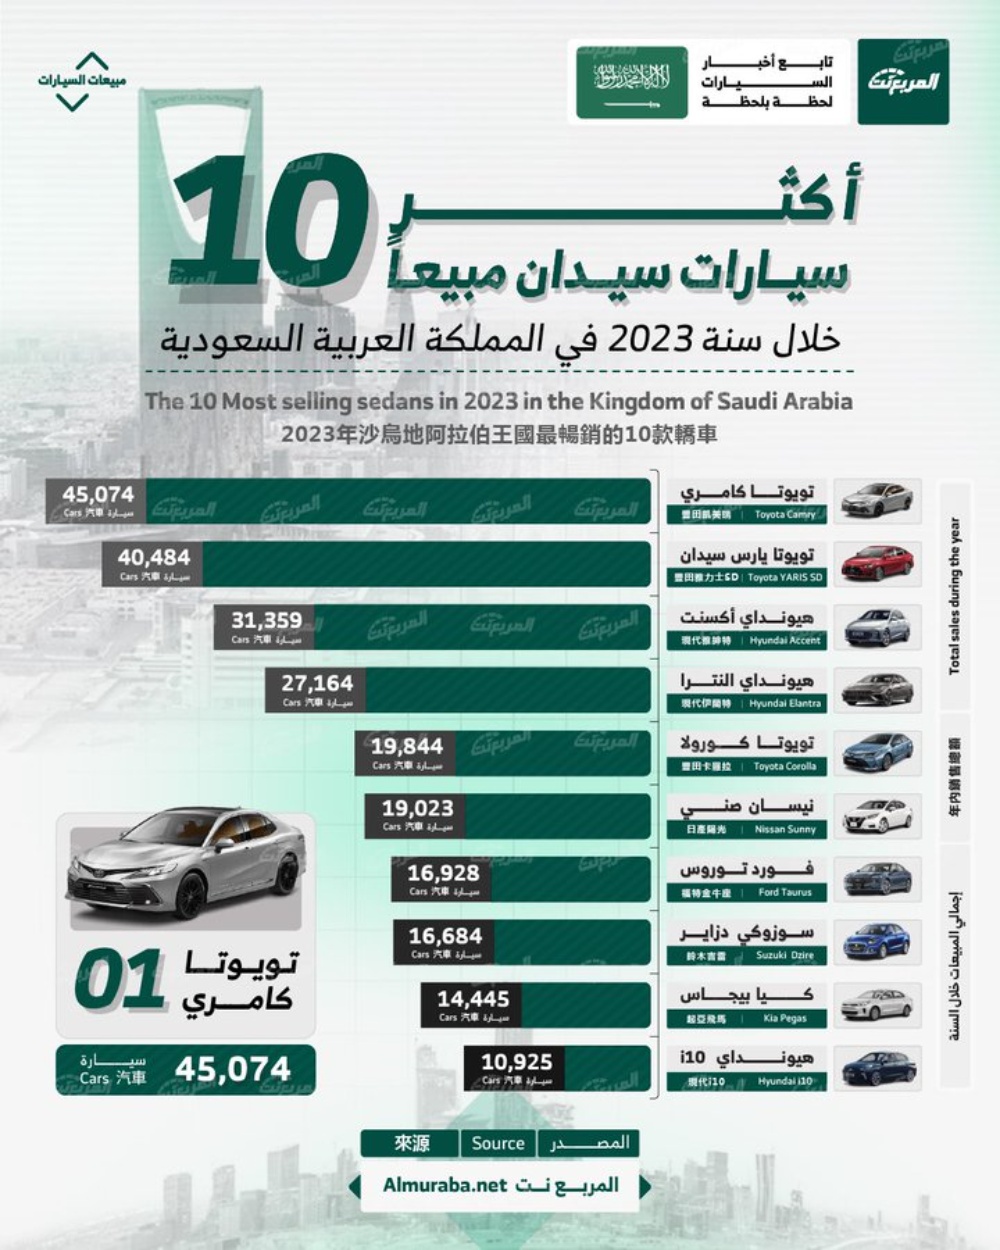 أكثر 10 سيارات سيدان مبيعًا خلال سنة 2023 في المملكة العربية السعودية.. “تويوتا كامري” تتصدر بالأرقام